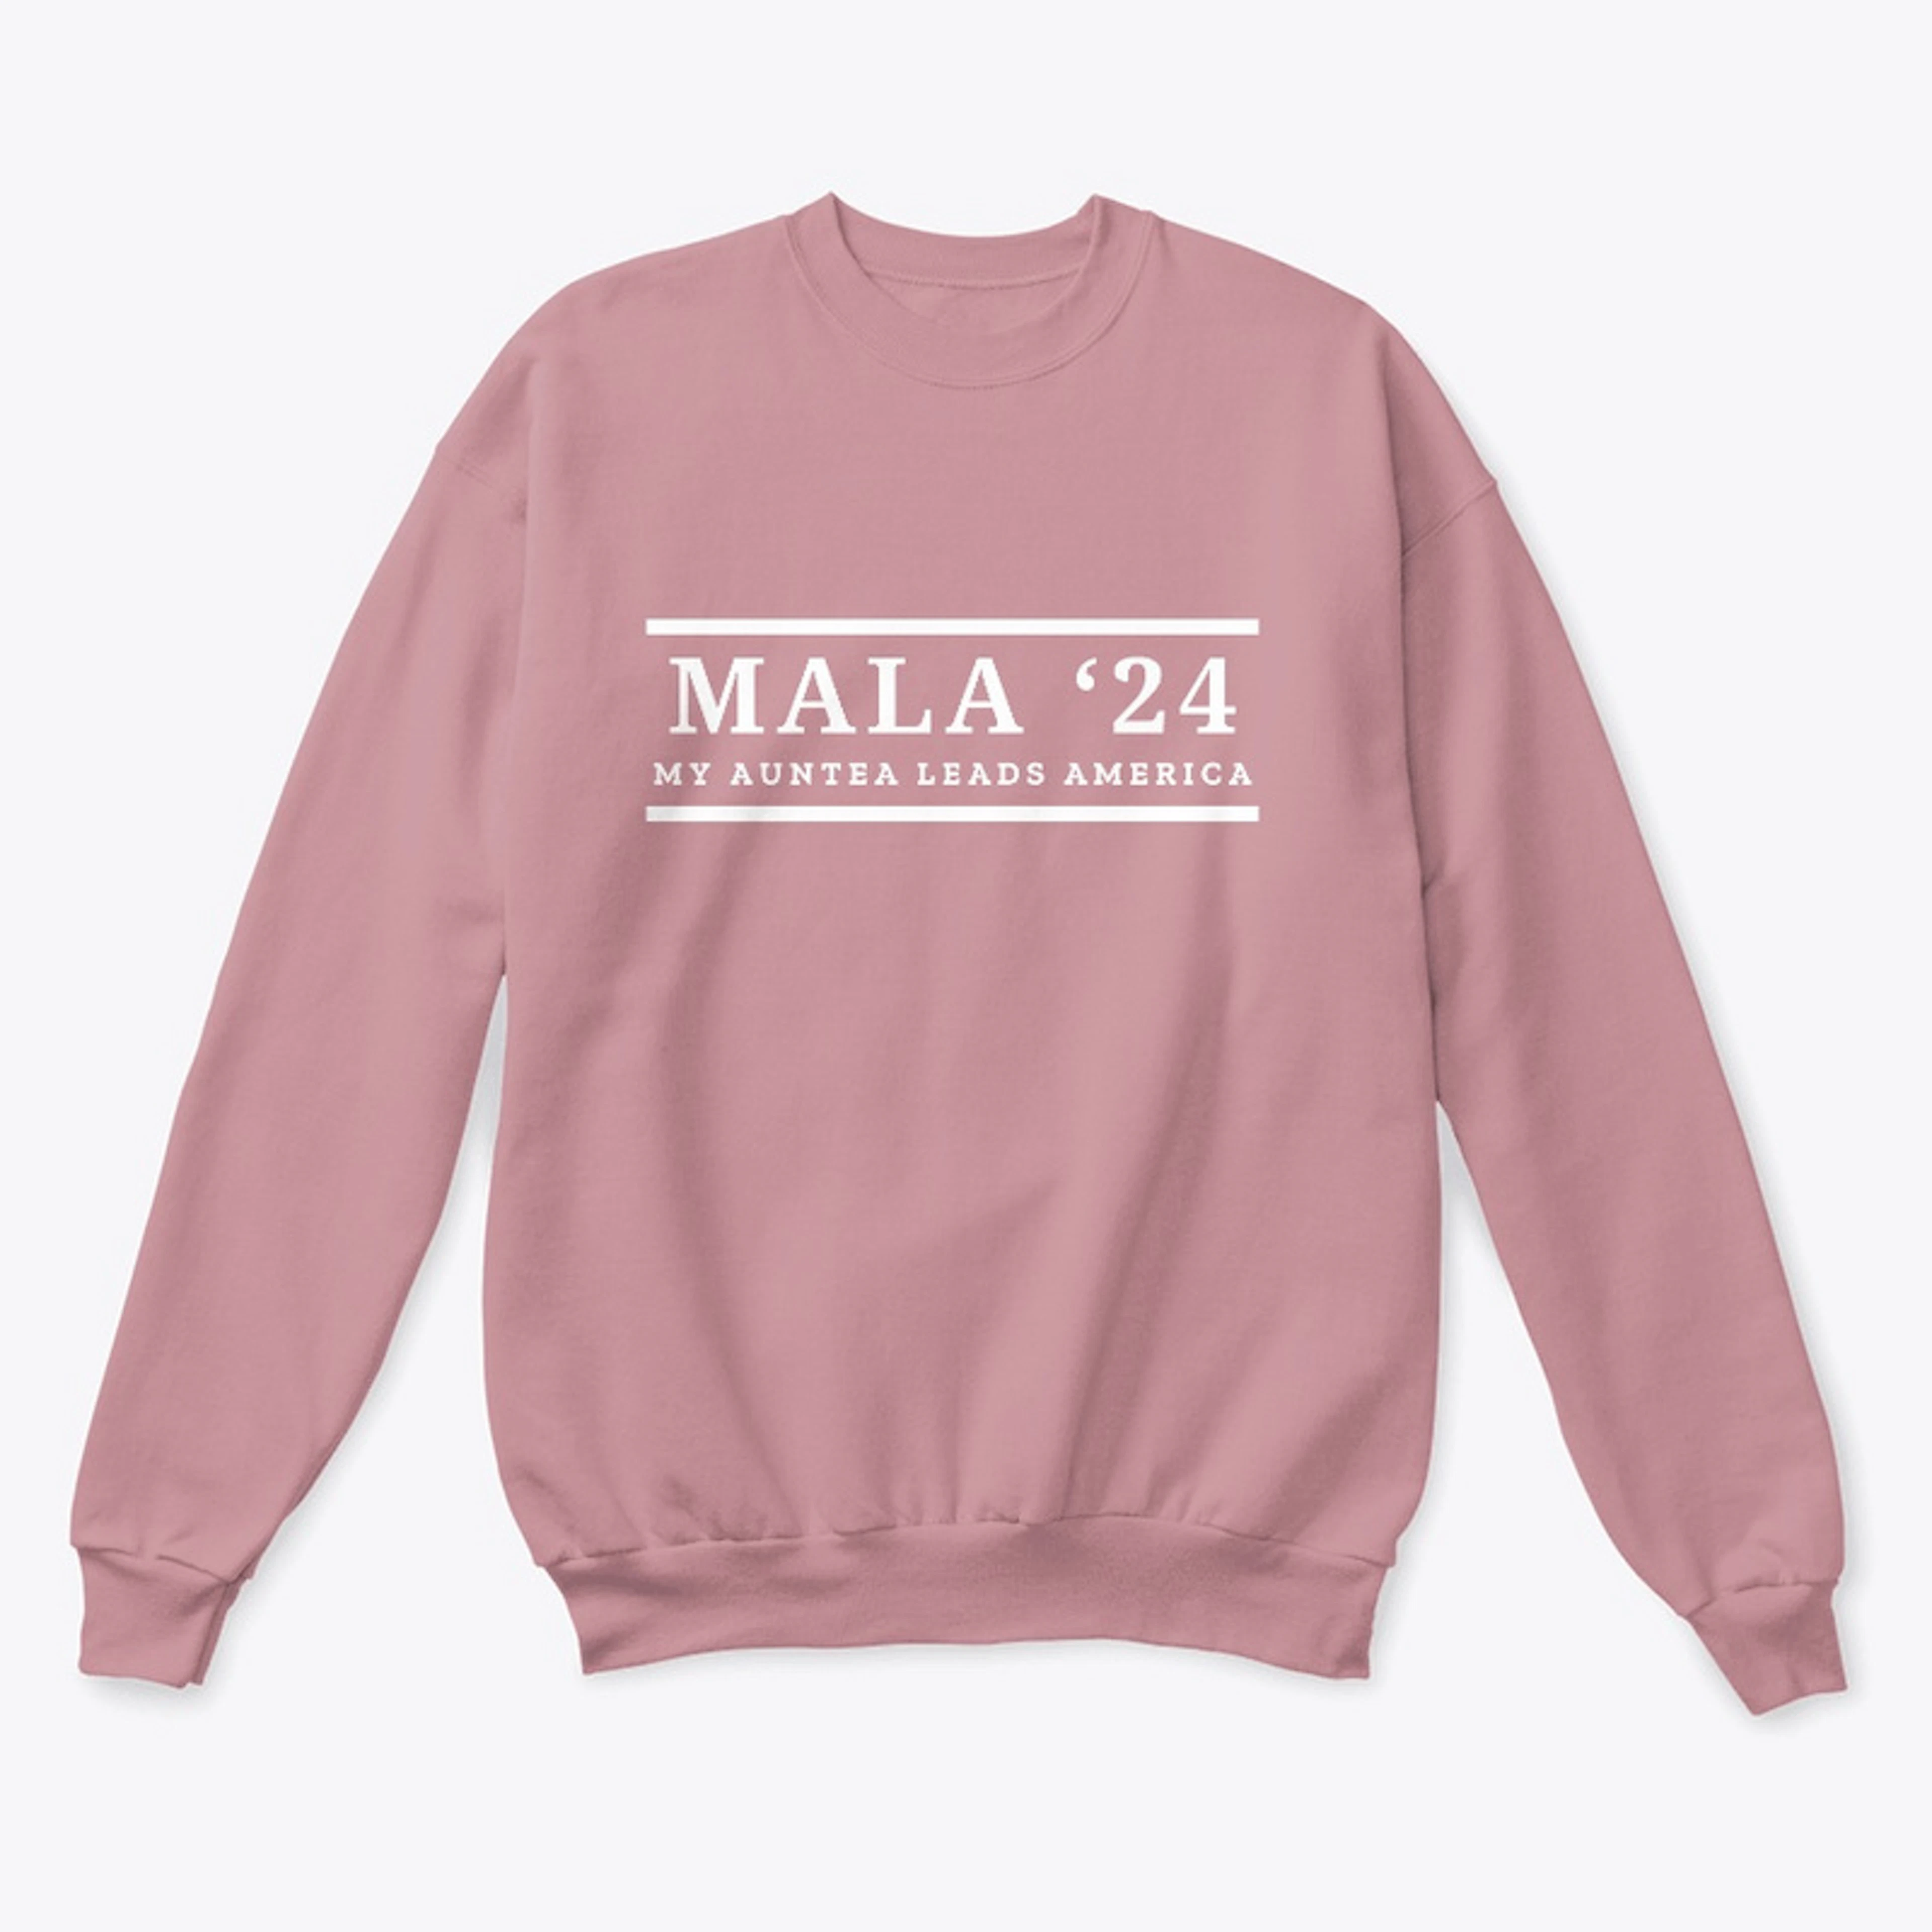 MALA '24